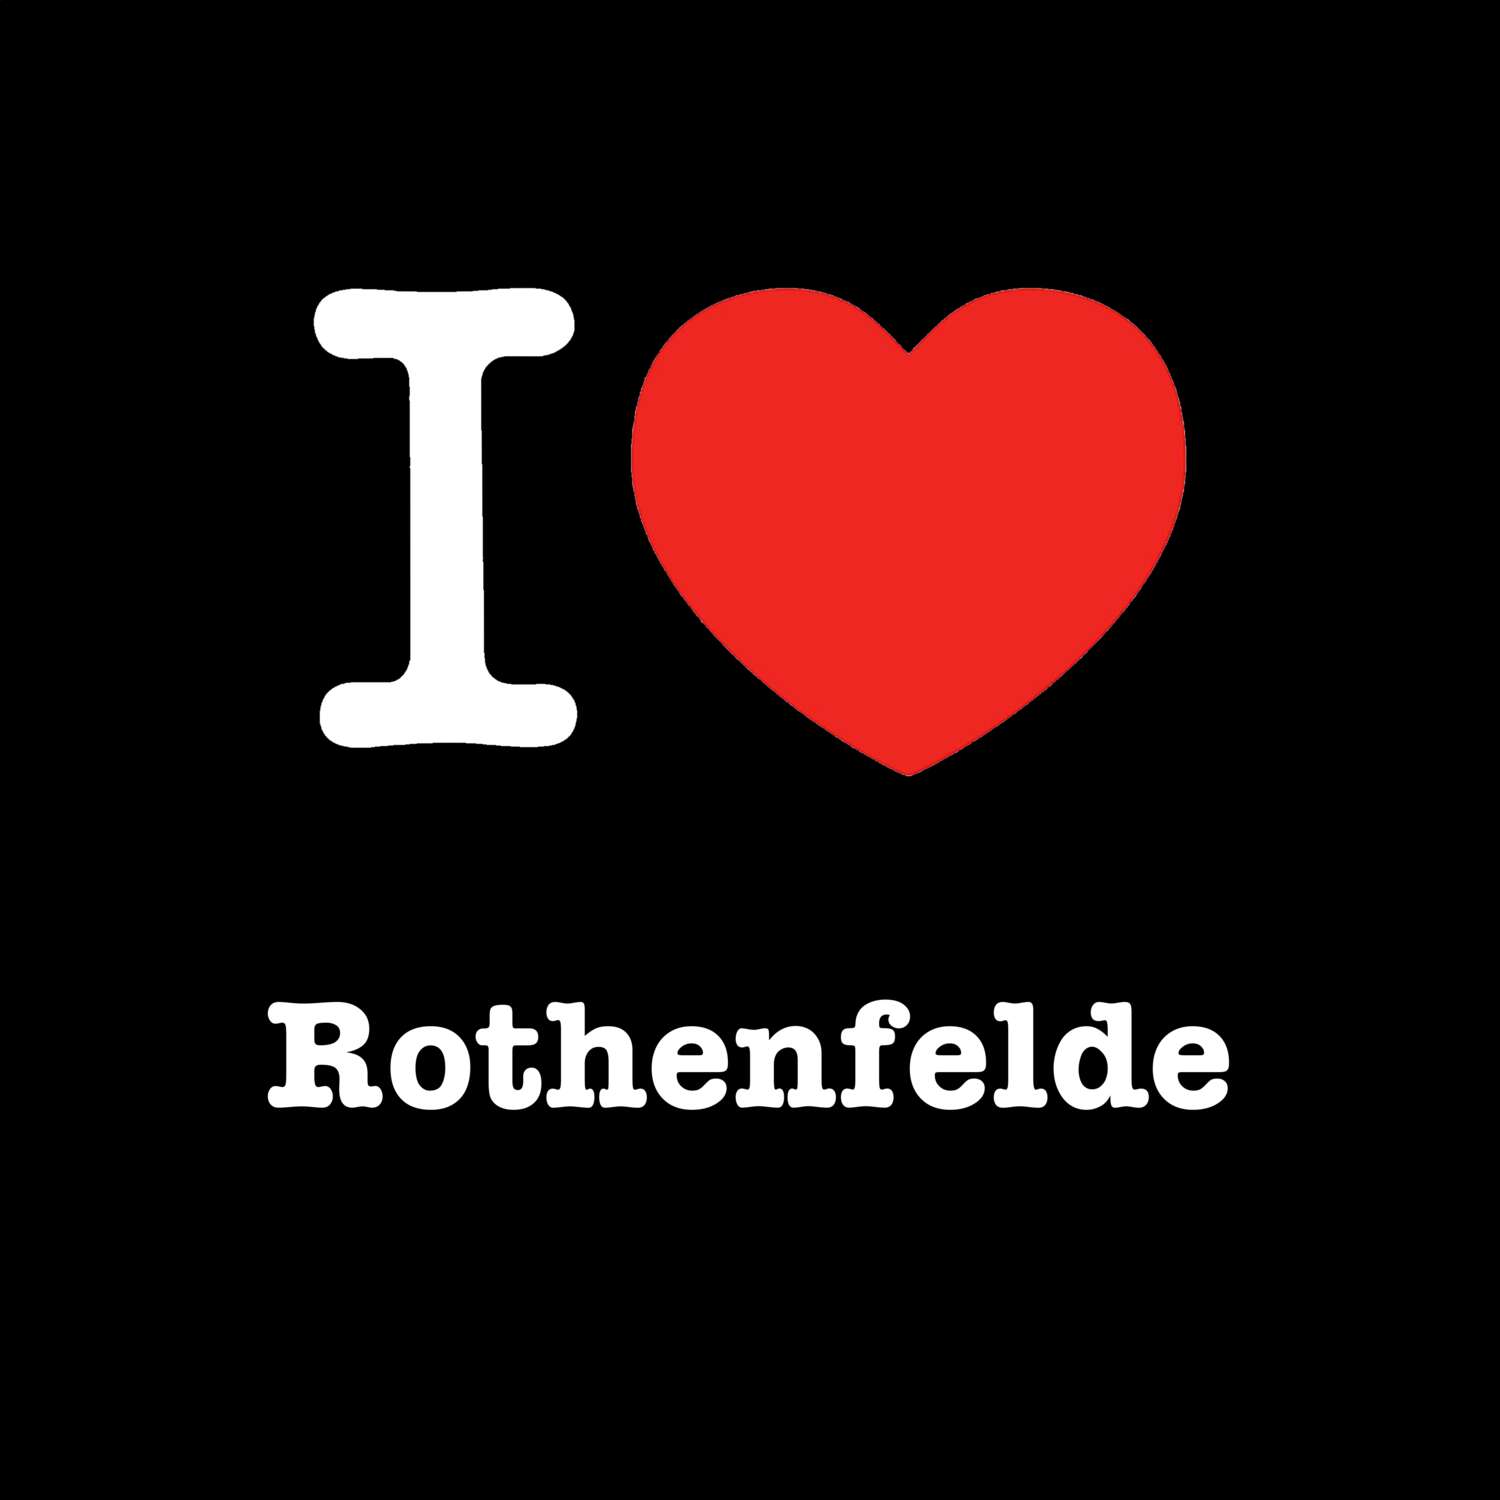 Rothenfelde T-Shirt »I love«